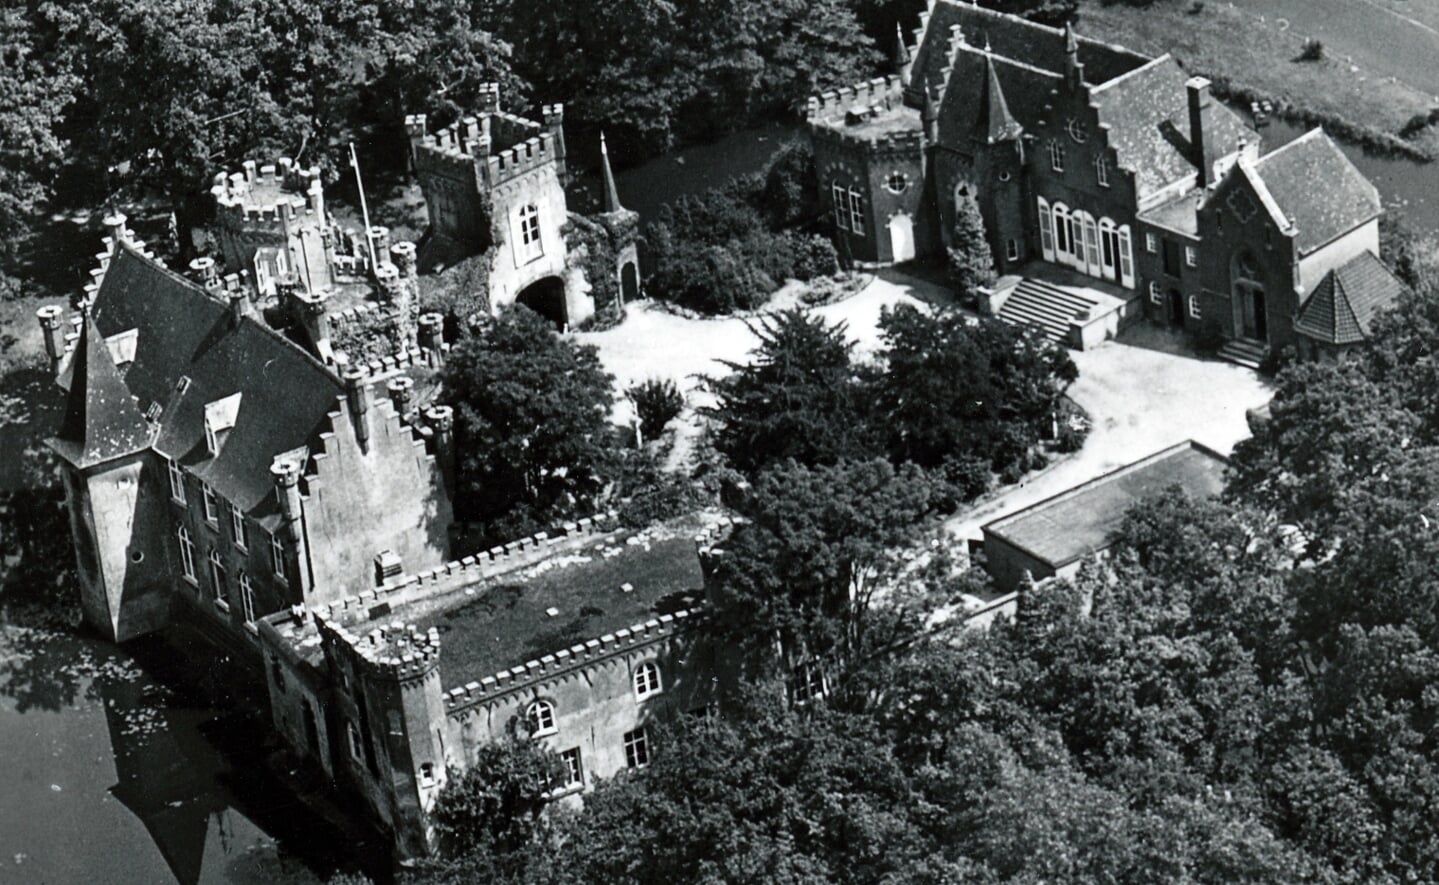 Kasteel Stapelen staat centraal in een nieuw boek over de heerlijkheid Boxtel-Liempde van Heemkunde Boxtel. Van bovenaf gefotografeerd in 1995, vanuit dit standpunt zie je het kasteel zelden.